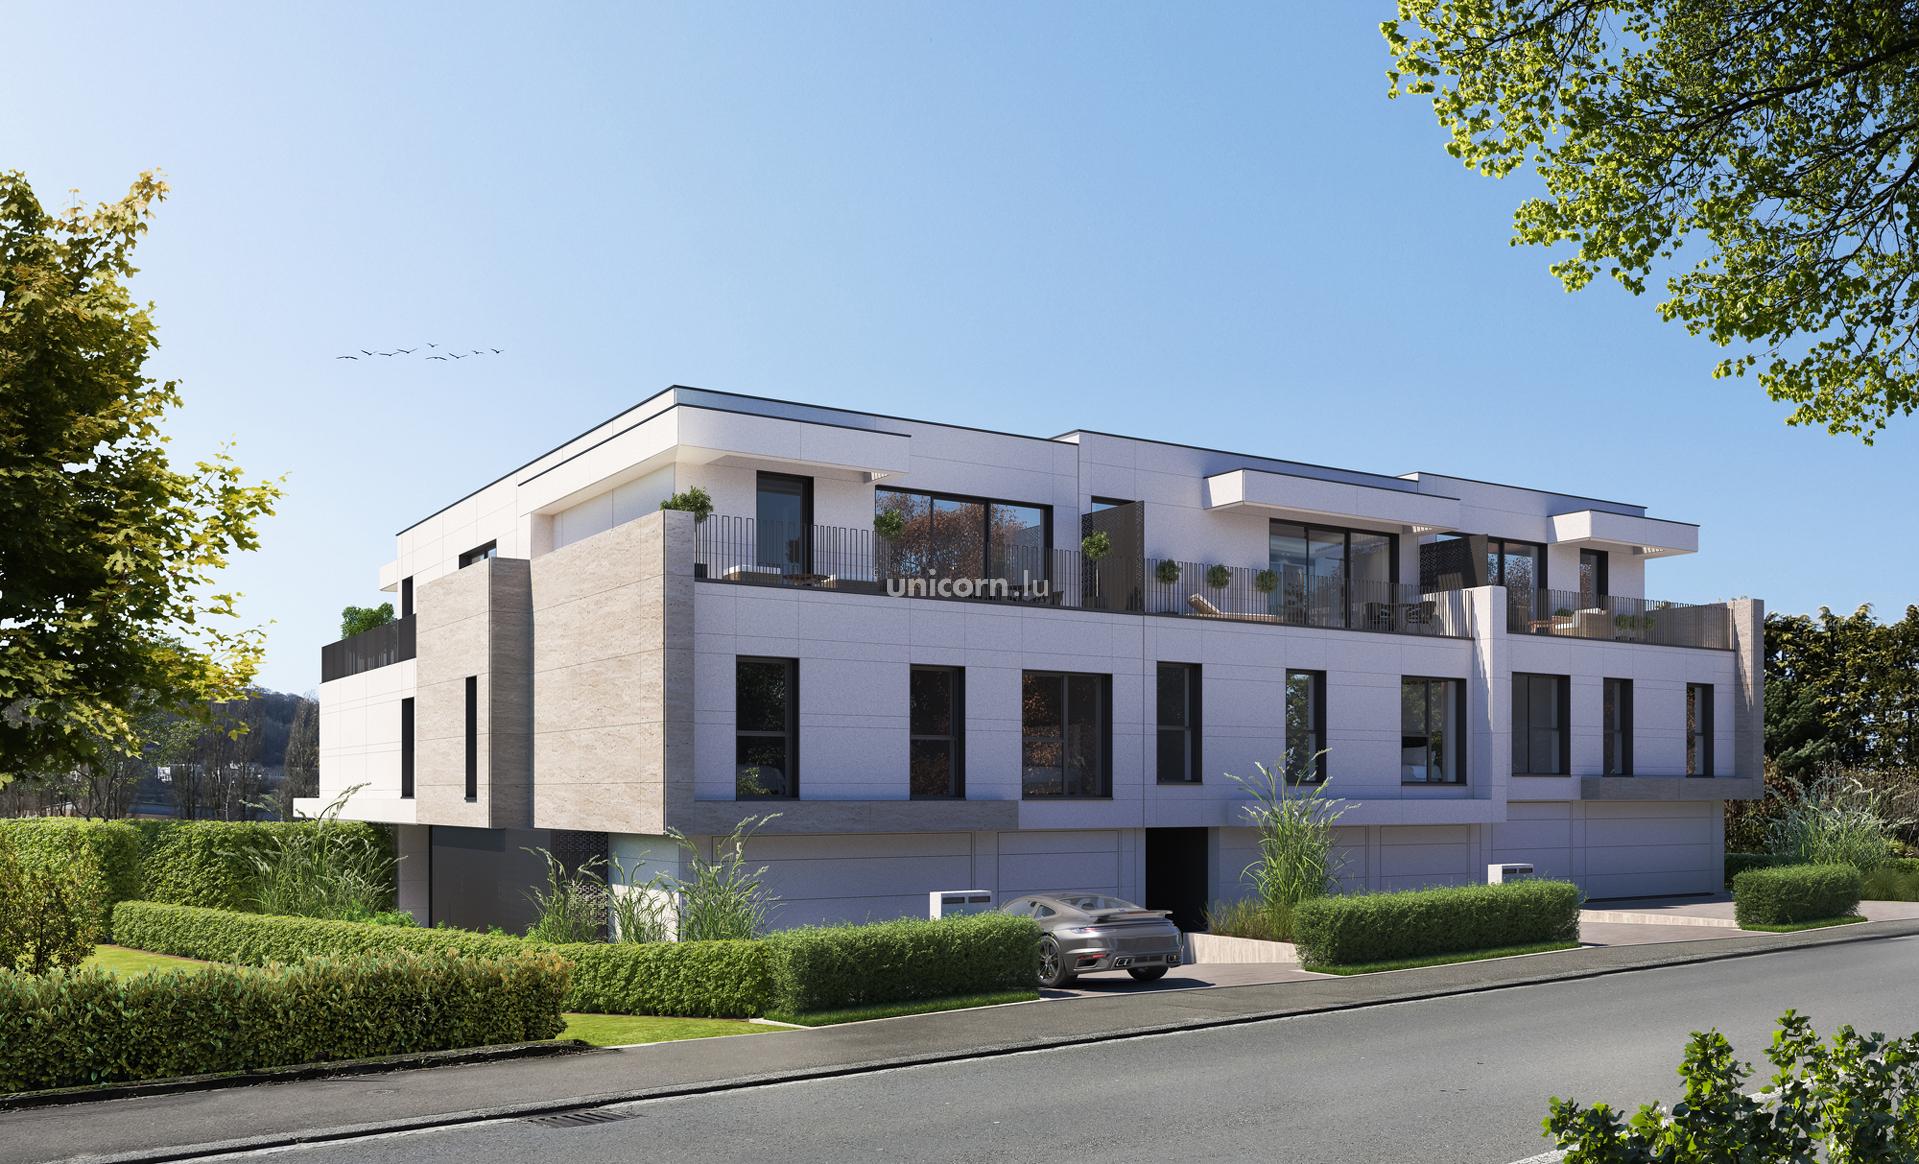  ERMESINDE - Real estate project in Niederanven